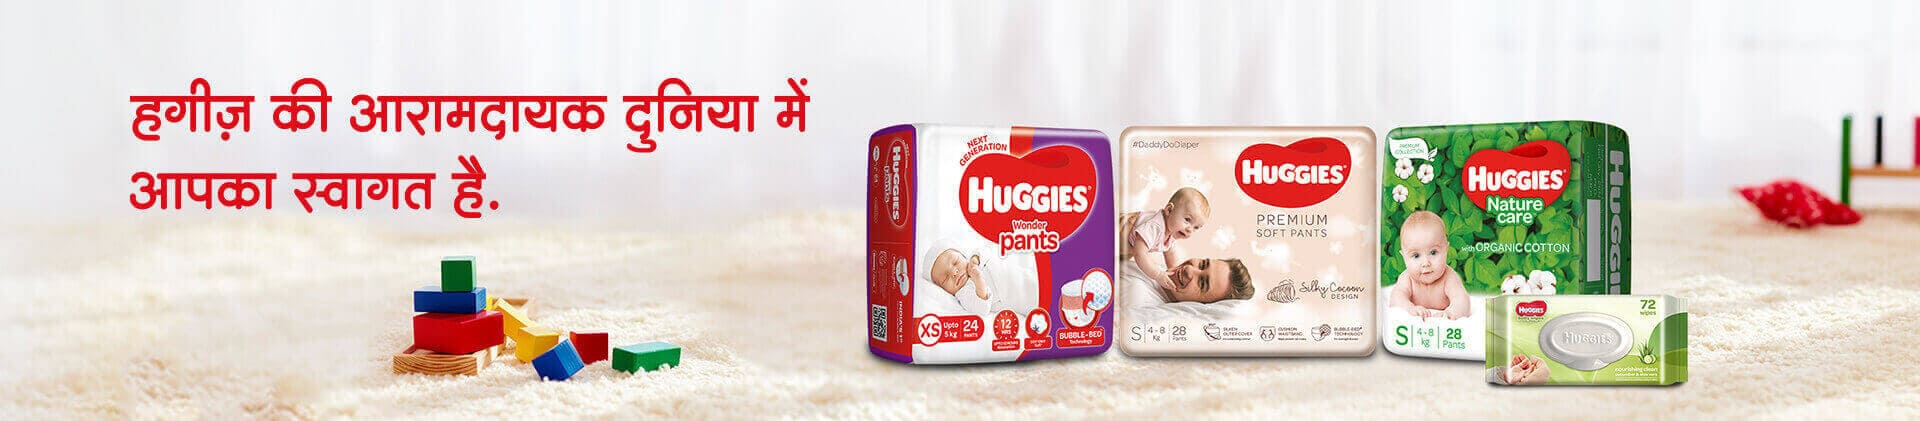 hindi-product-page-1920x421